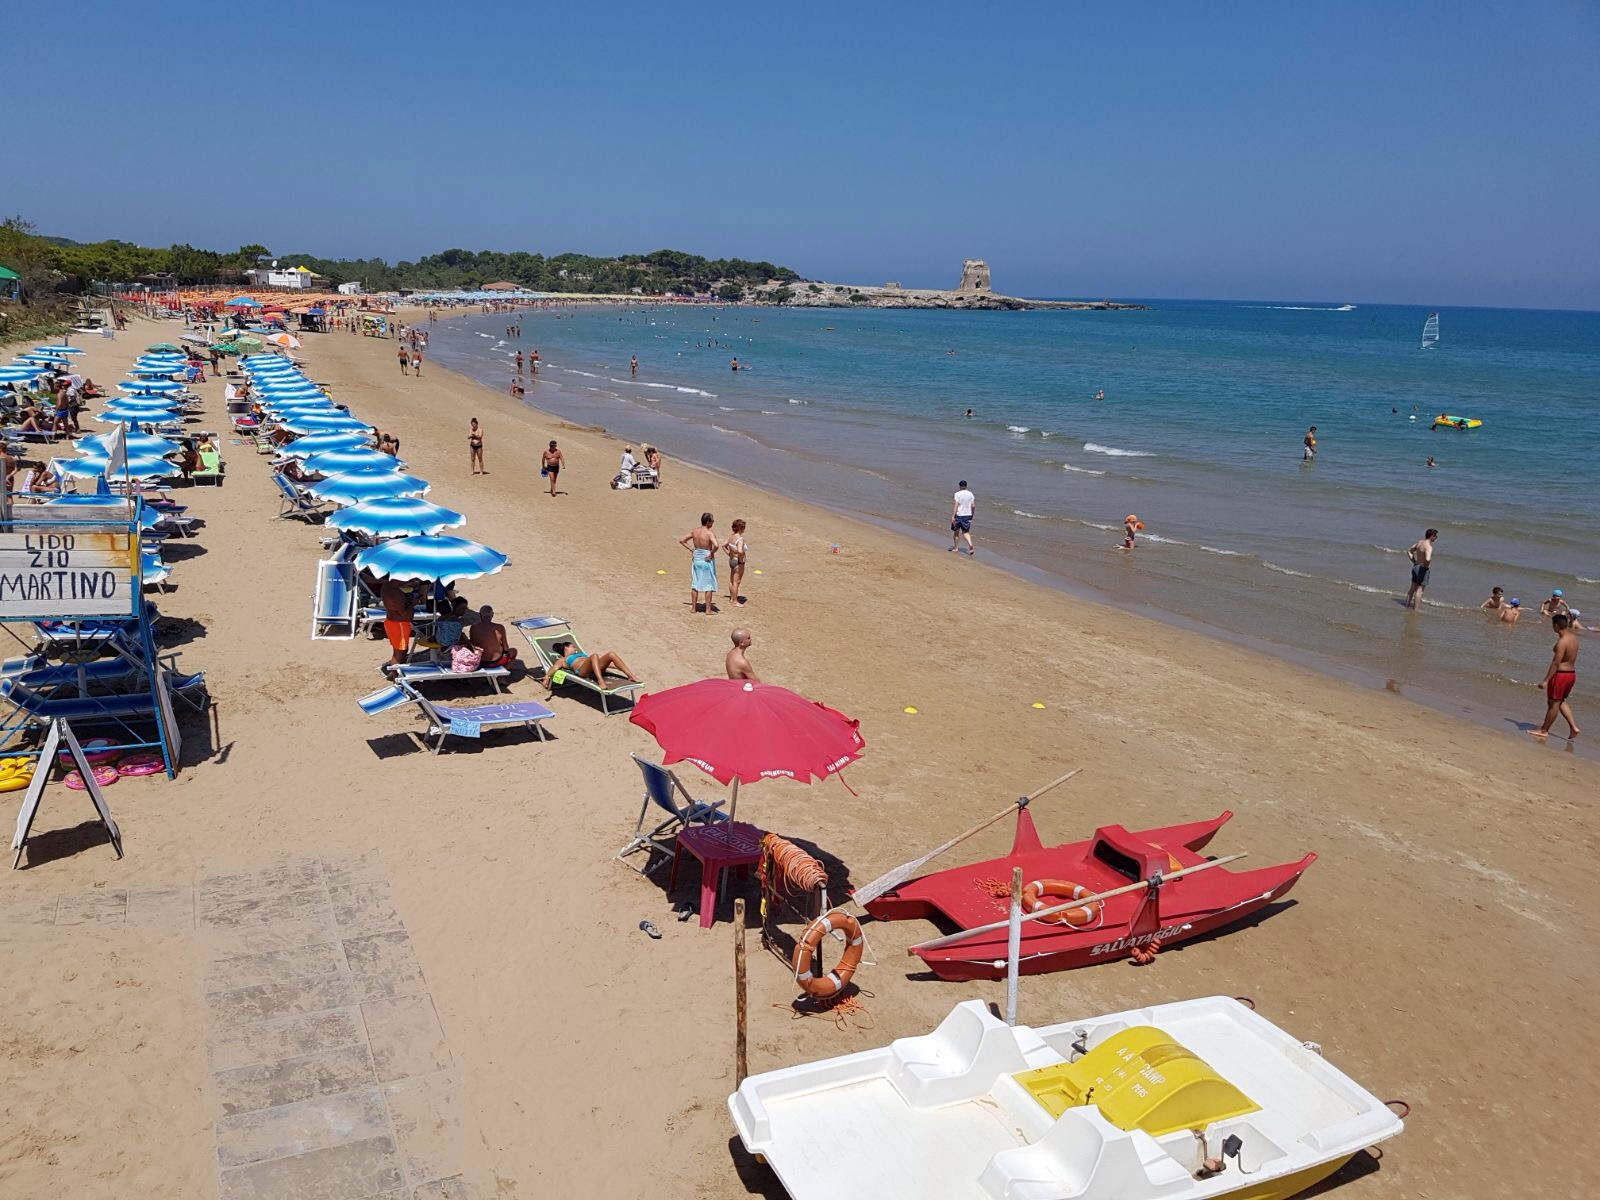 Spiaggia di Sfinale'in fotoğrafı i̇nce kahverengi kum yüzey ile